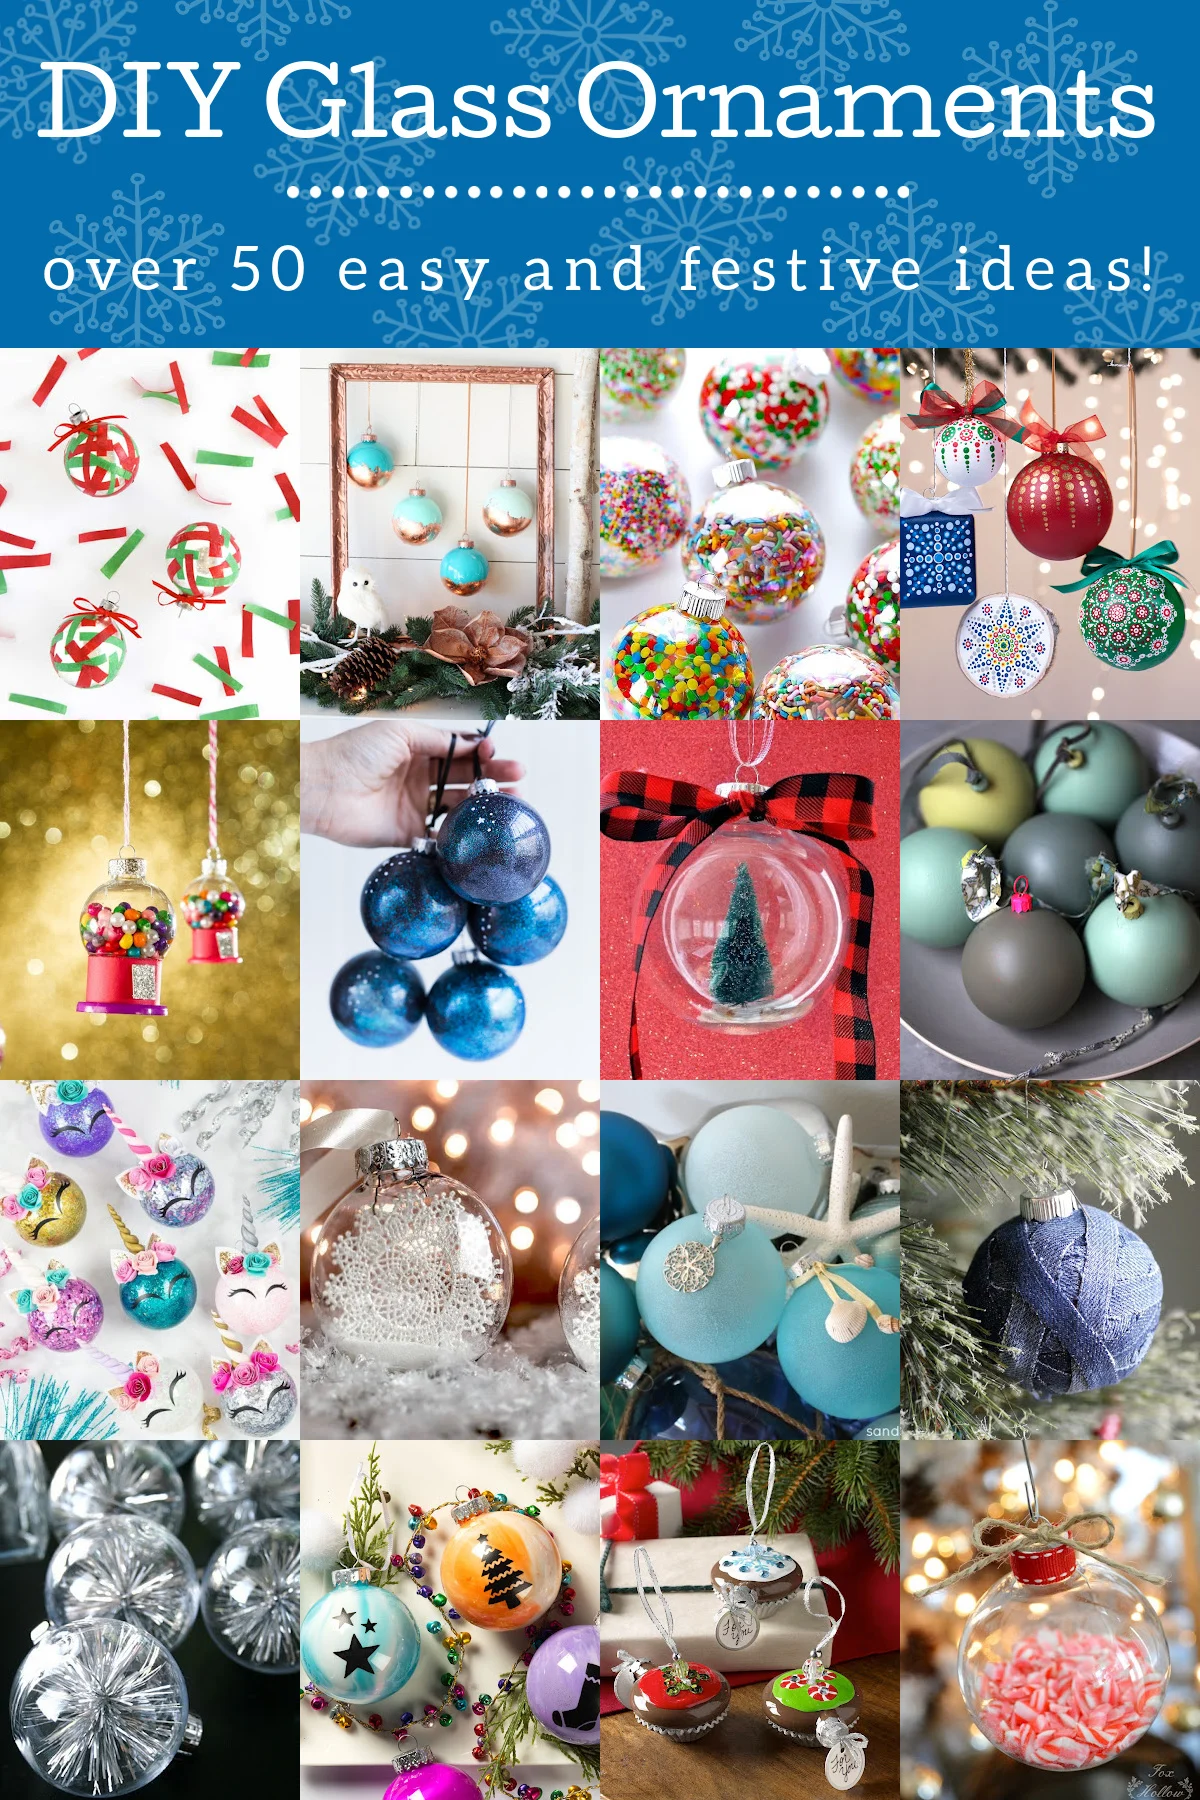 DIY Glass Ornaments for Your Christmas Tree - Mod Podge Rocks